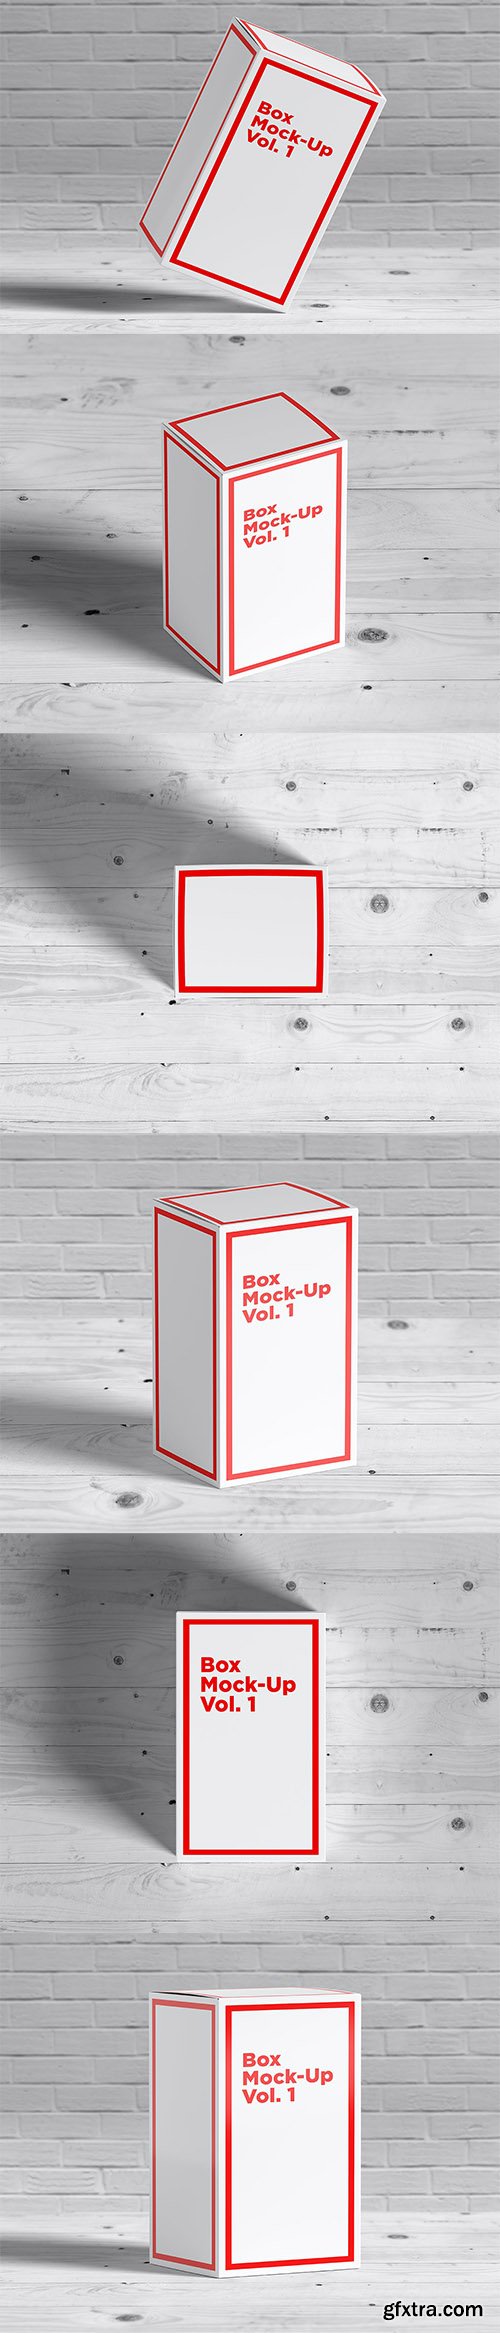 Box Mock-Ups vol. 1